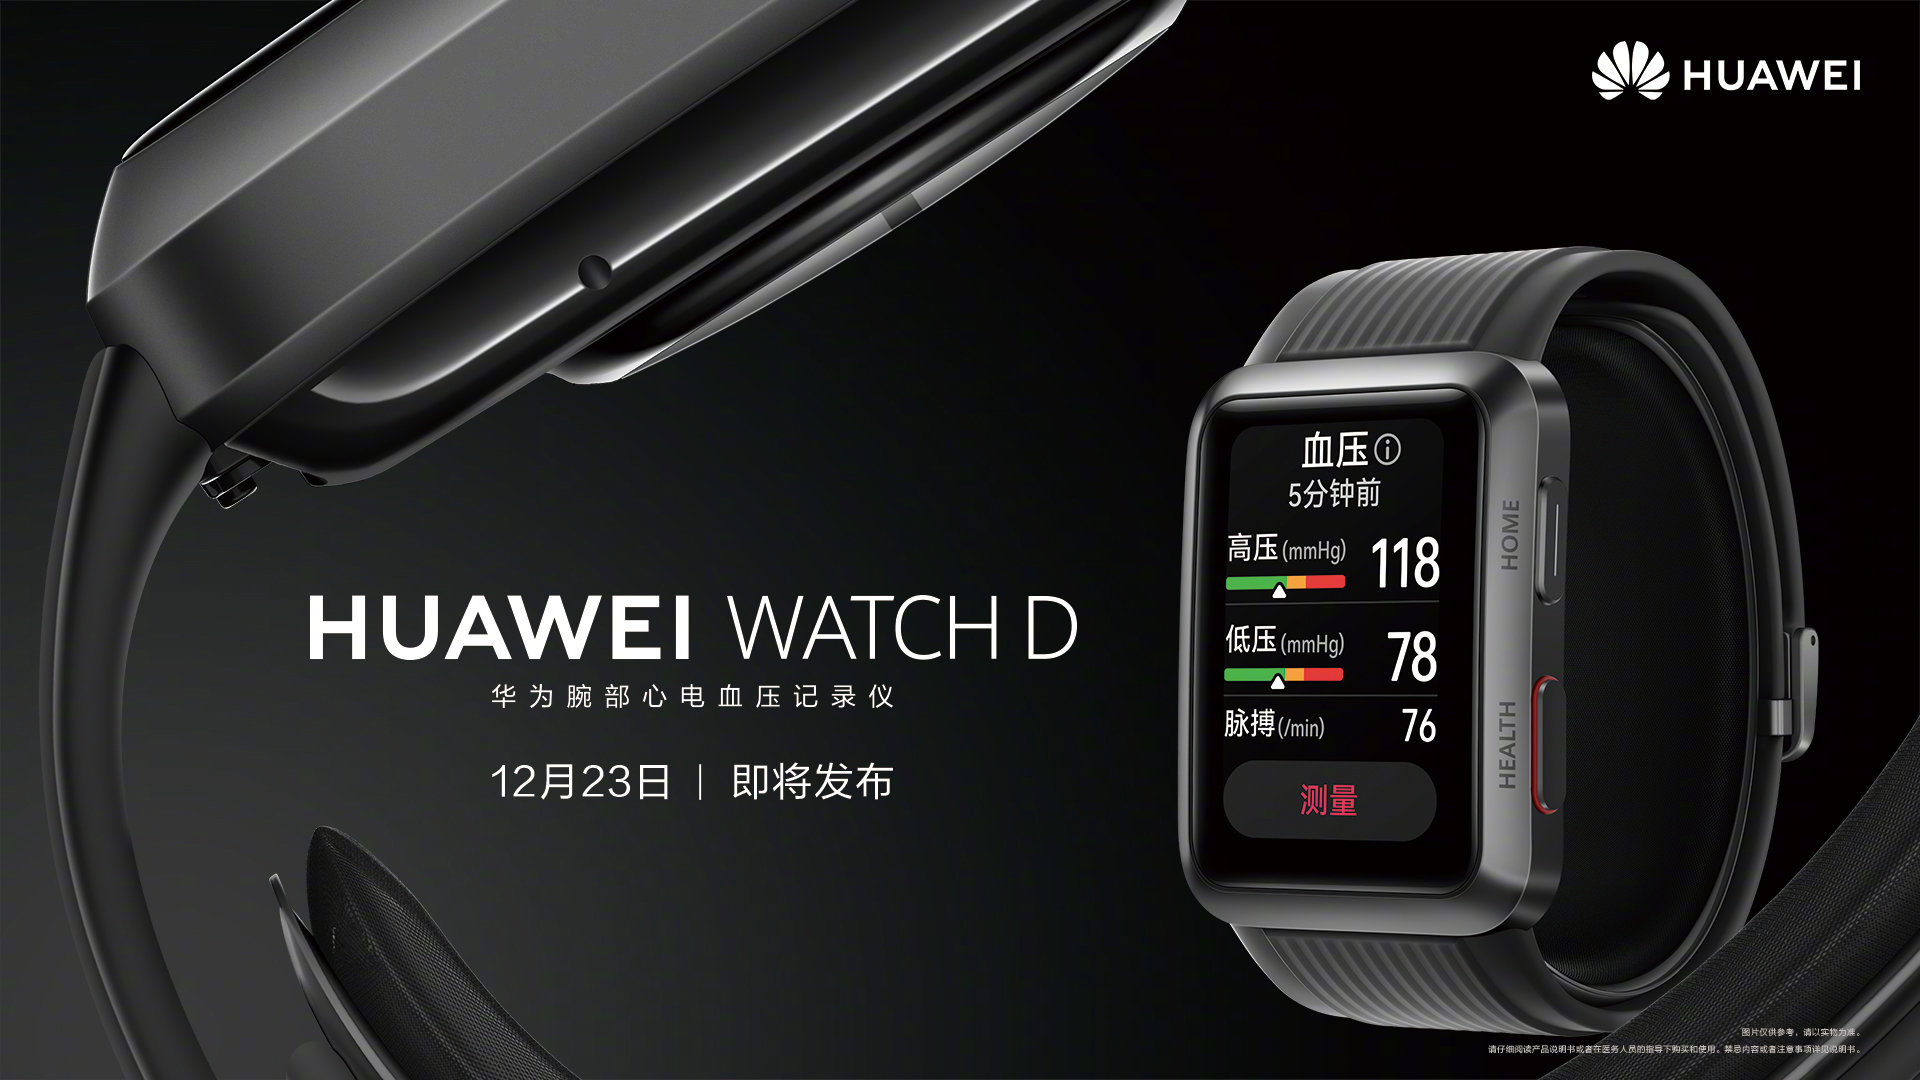 Sí, el reloj inteligente Huawei Watch D se presentará junto con el "clamshell" Huawei P50 Pocket